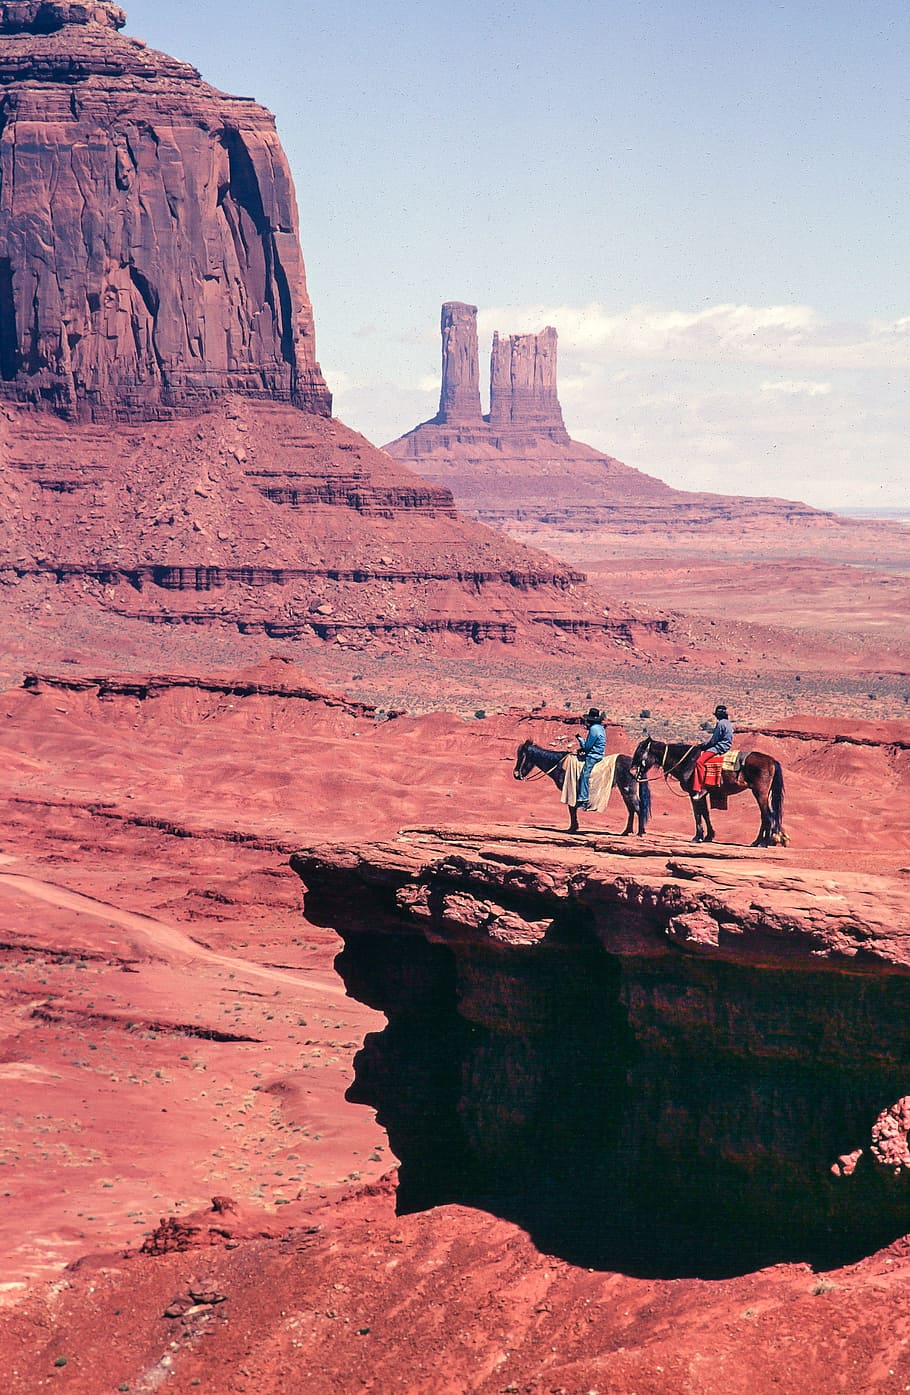 dois, cowboys de cavaleiro, john ford point, vale do monumento, américa, americano, desfiladeiro, vaqueiro, deserto, erosão